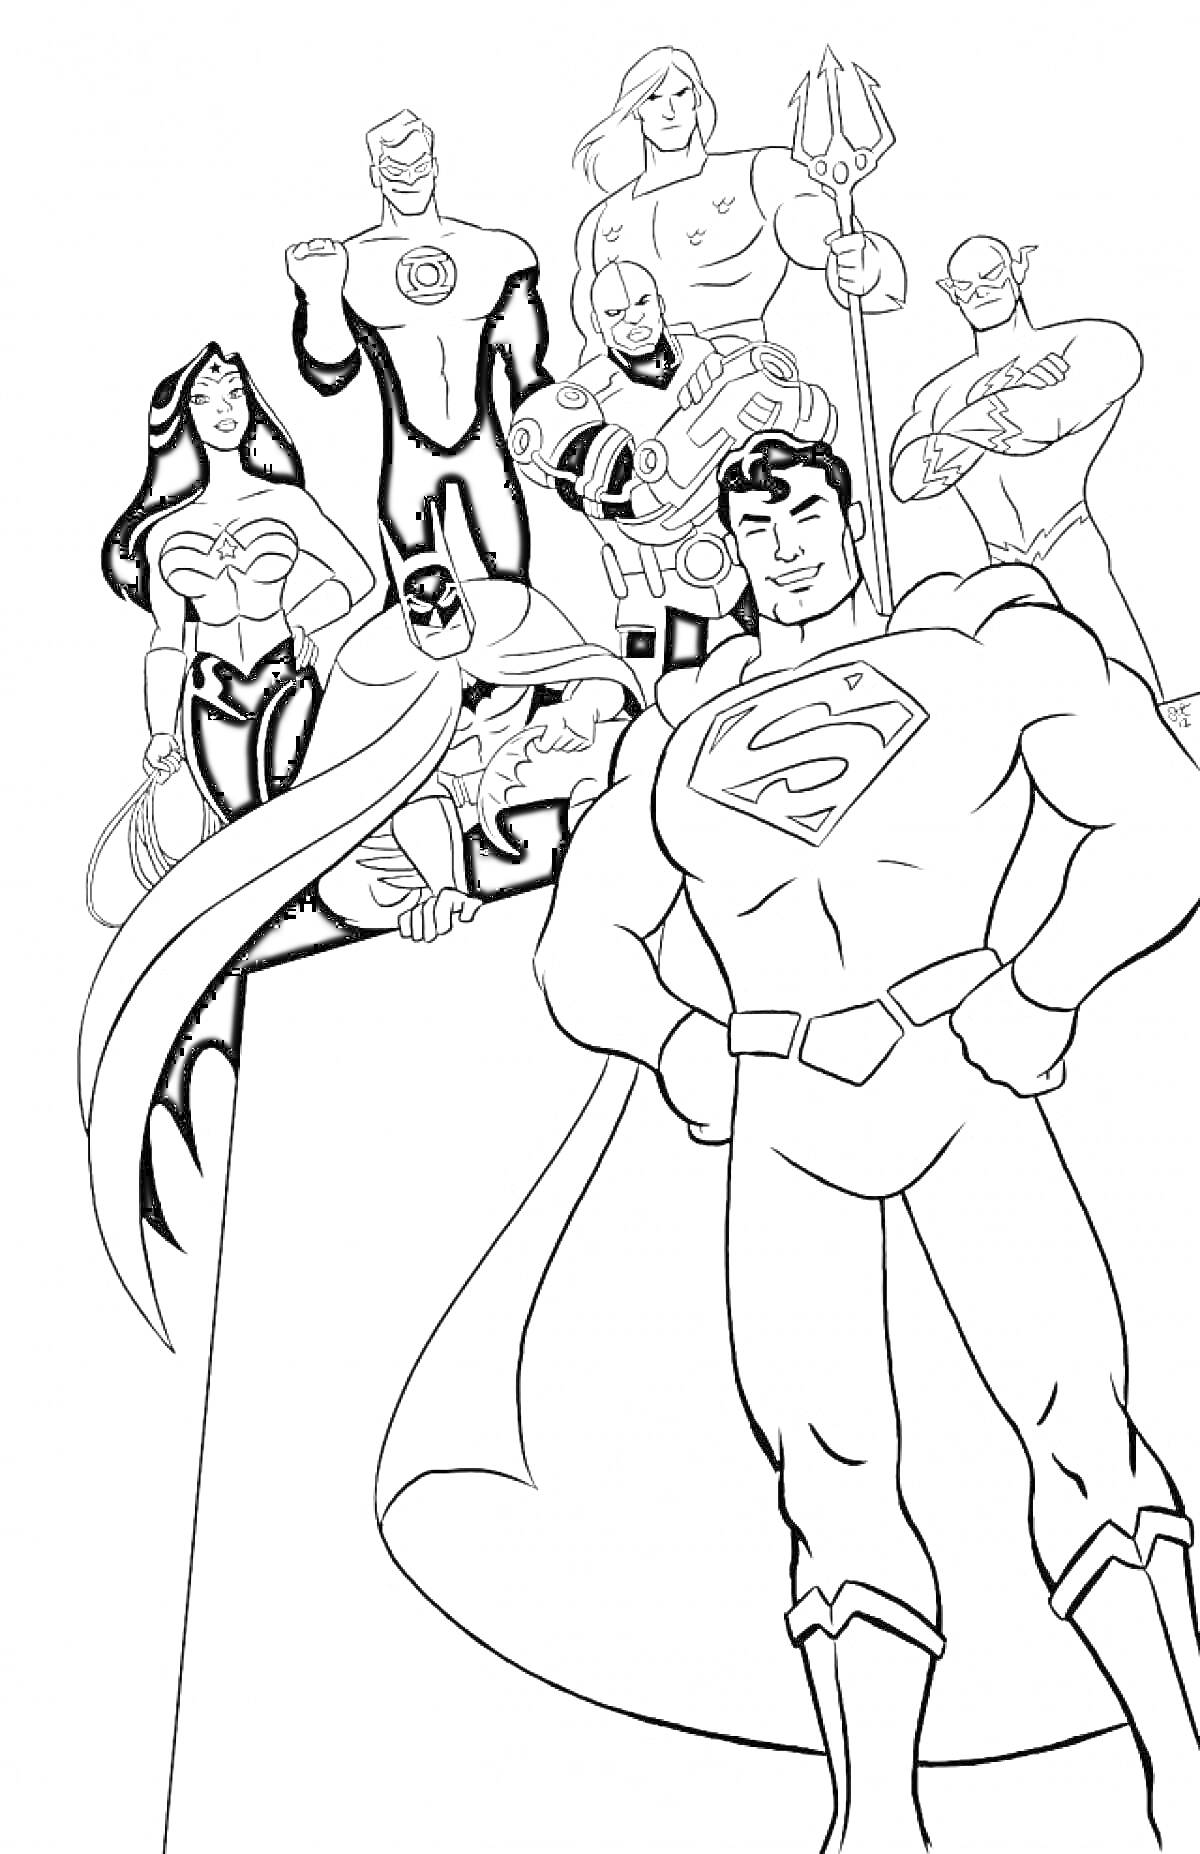 Раскраска Герои Лиги Справедливости в полный рост, 7 персонажей, включая супергероев с плащами, женщину с лентой, мужчину с трезубцем.